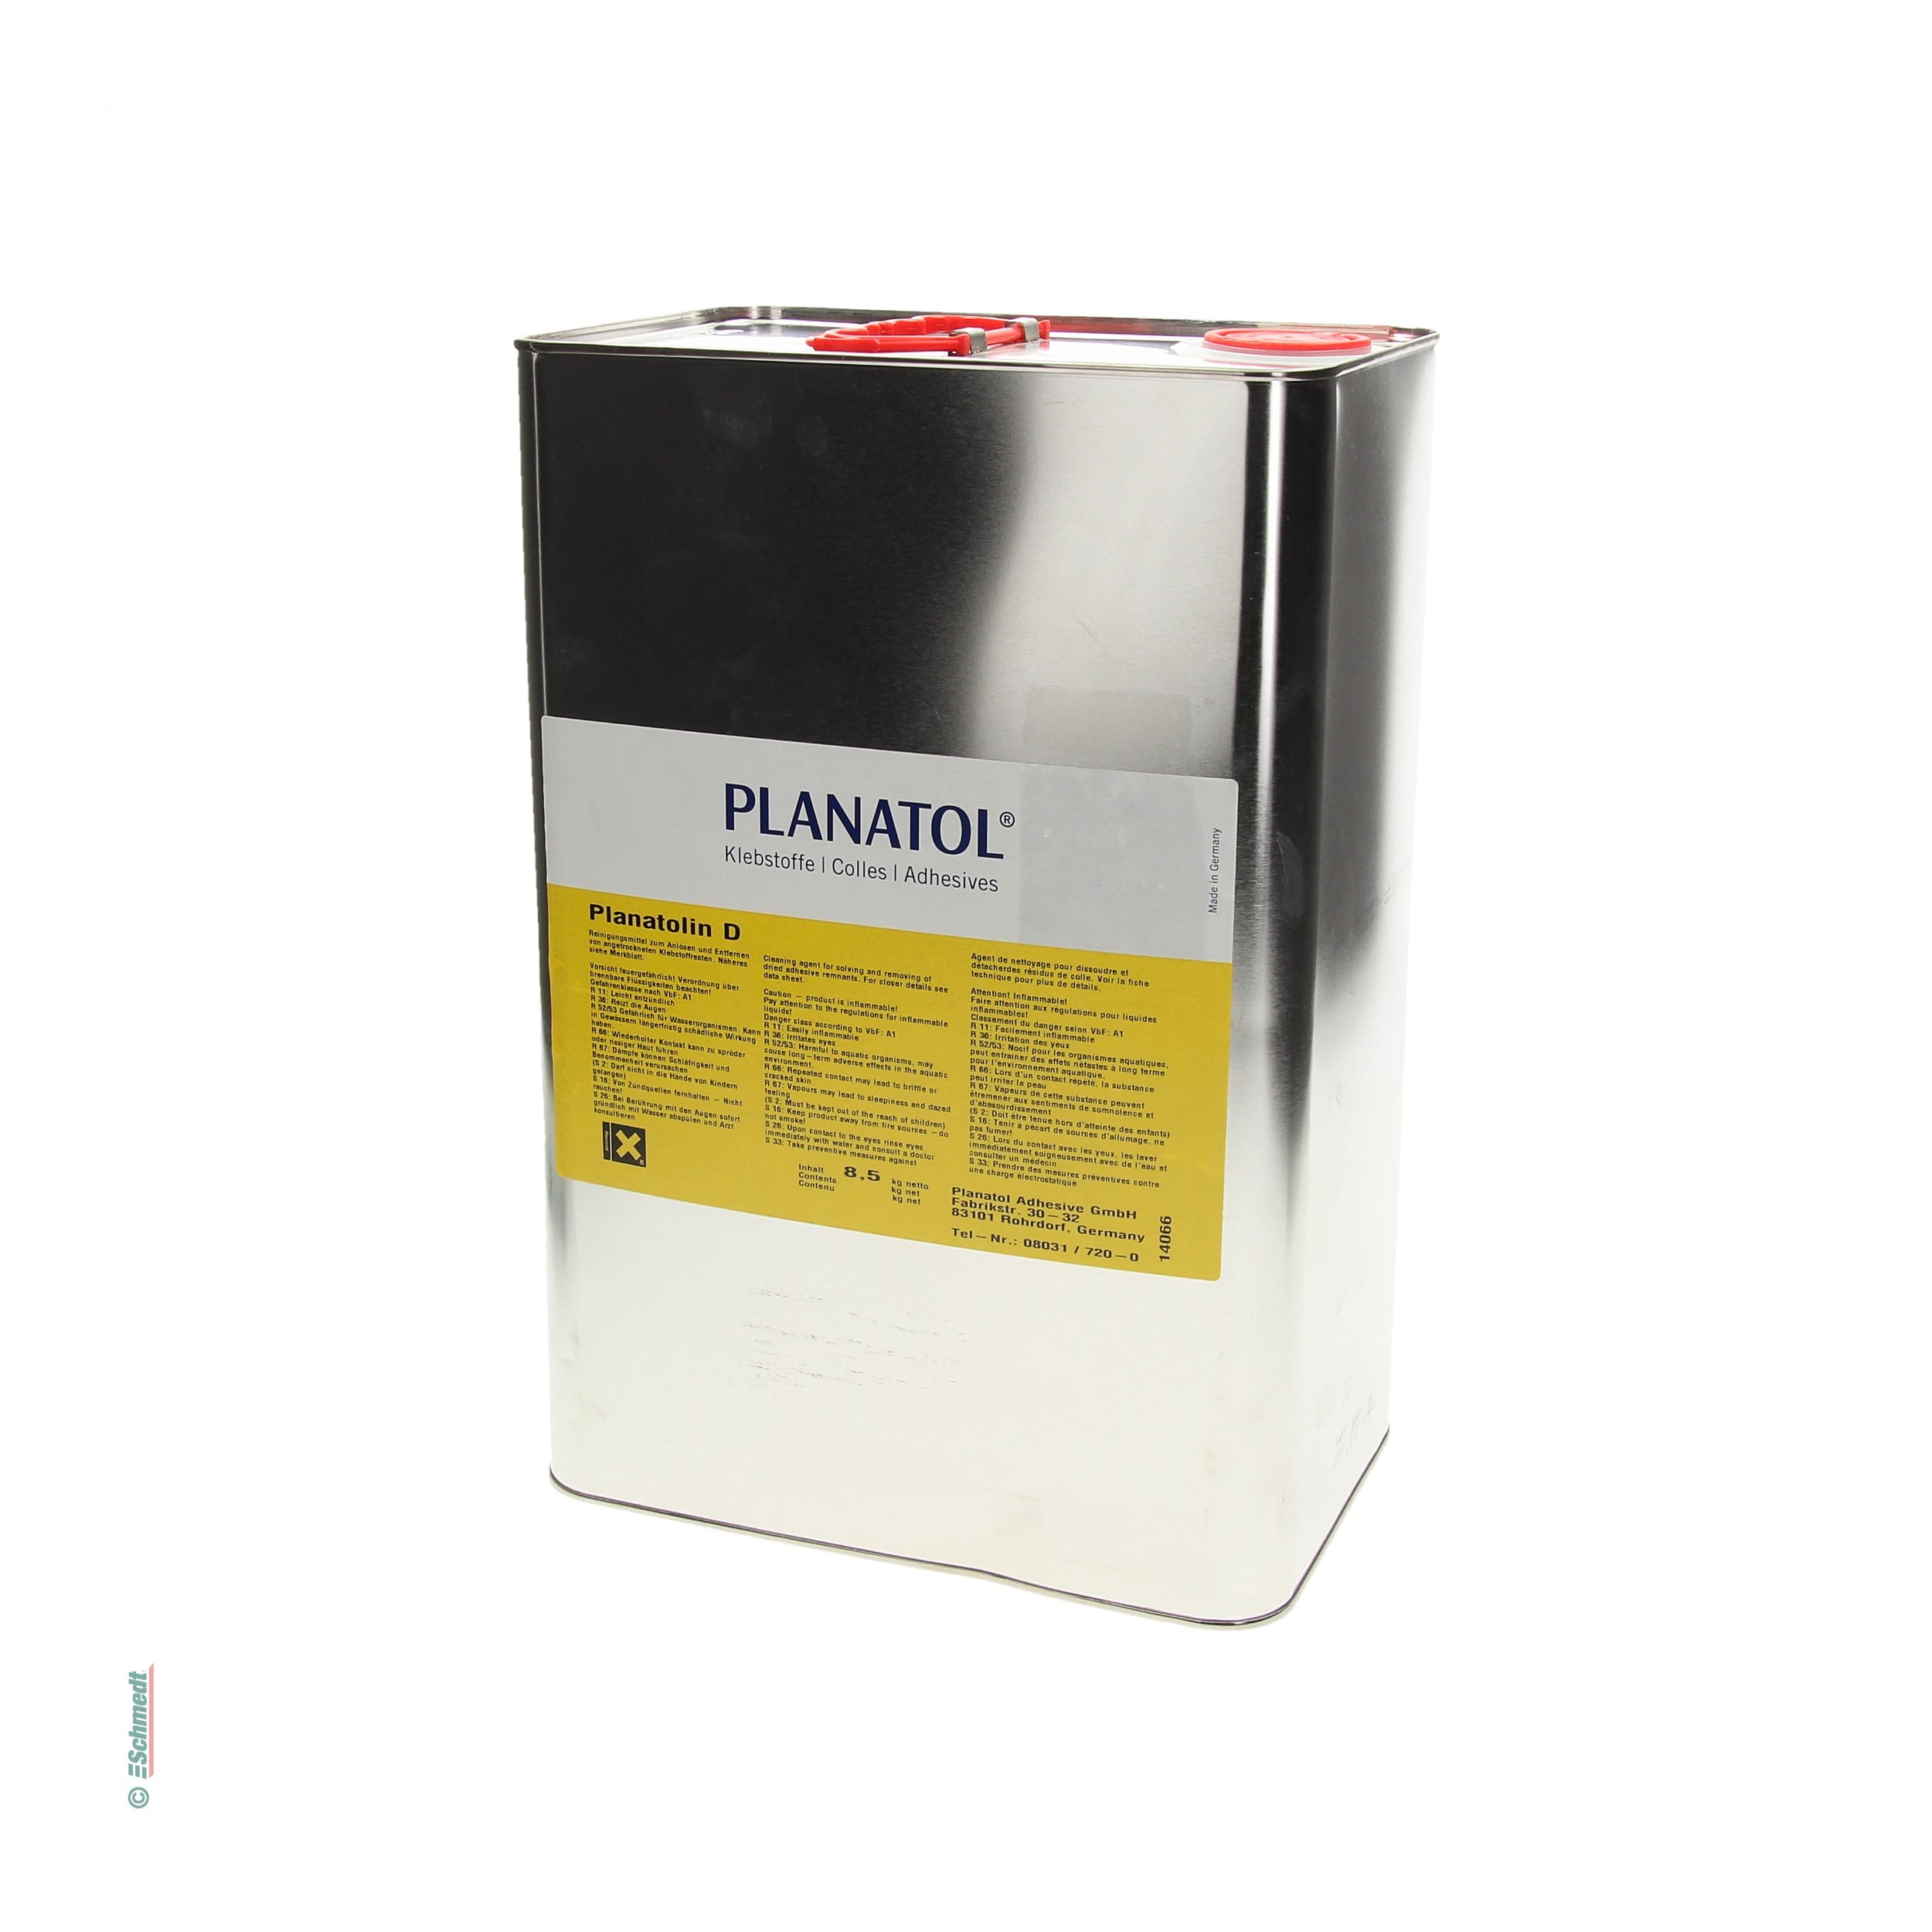 Planatolin D - Contenu Bidon / 8,5 Kg - Nettoyant à base de solvants pour les résidus de colles à dispersion de machines, appareils et pince...